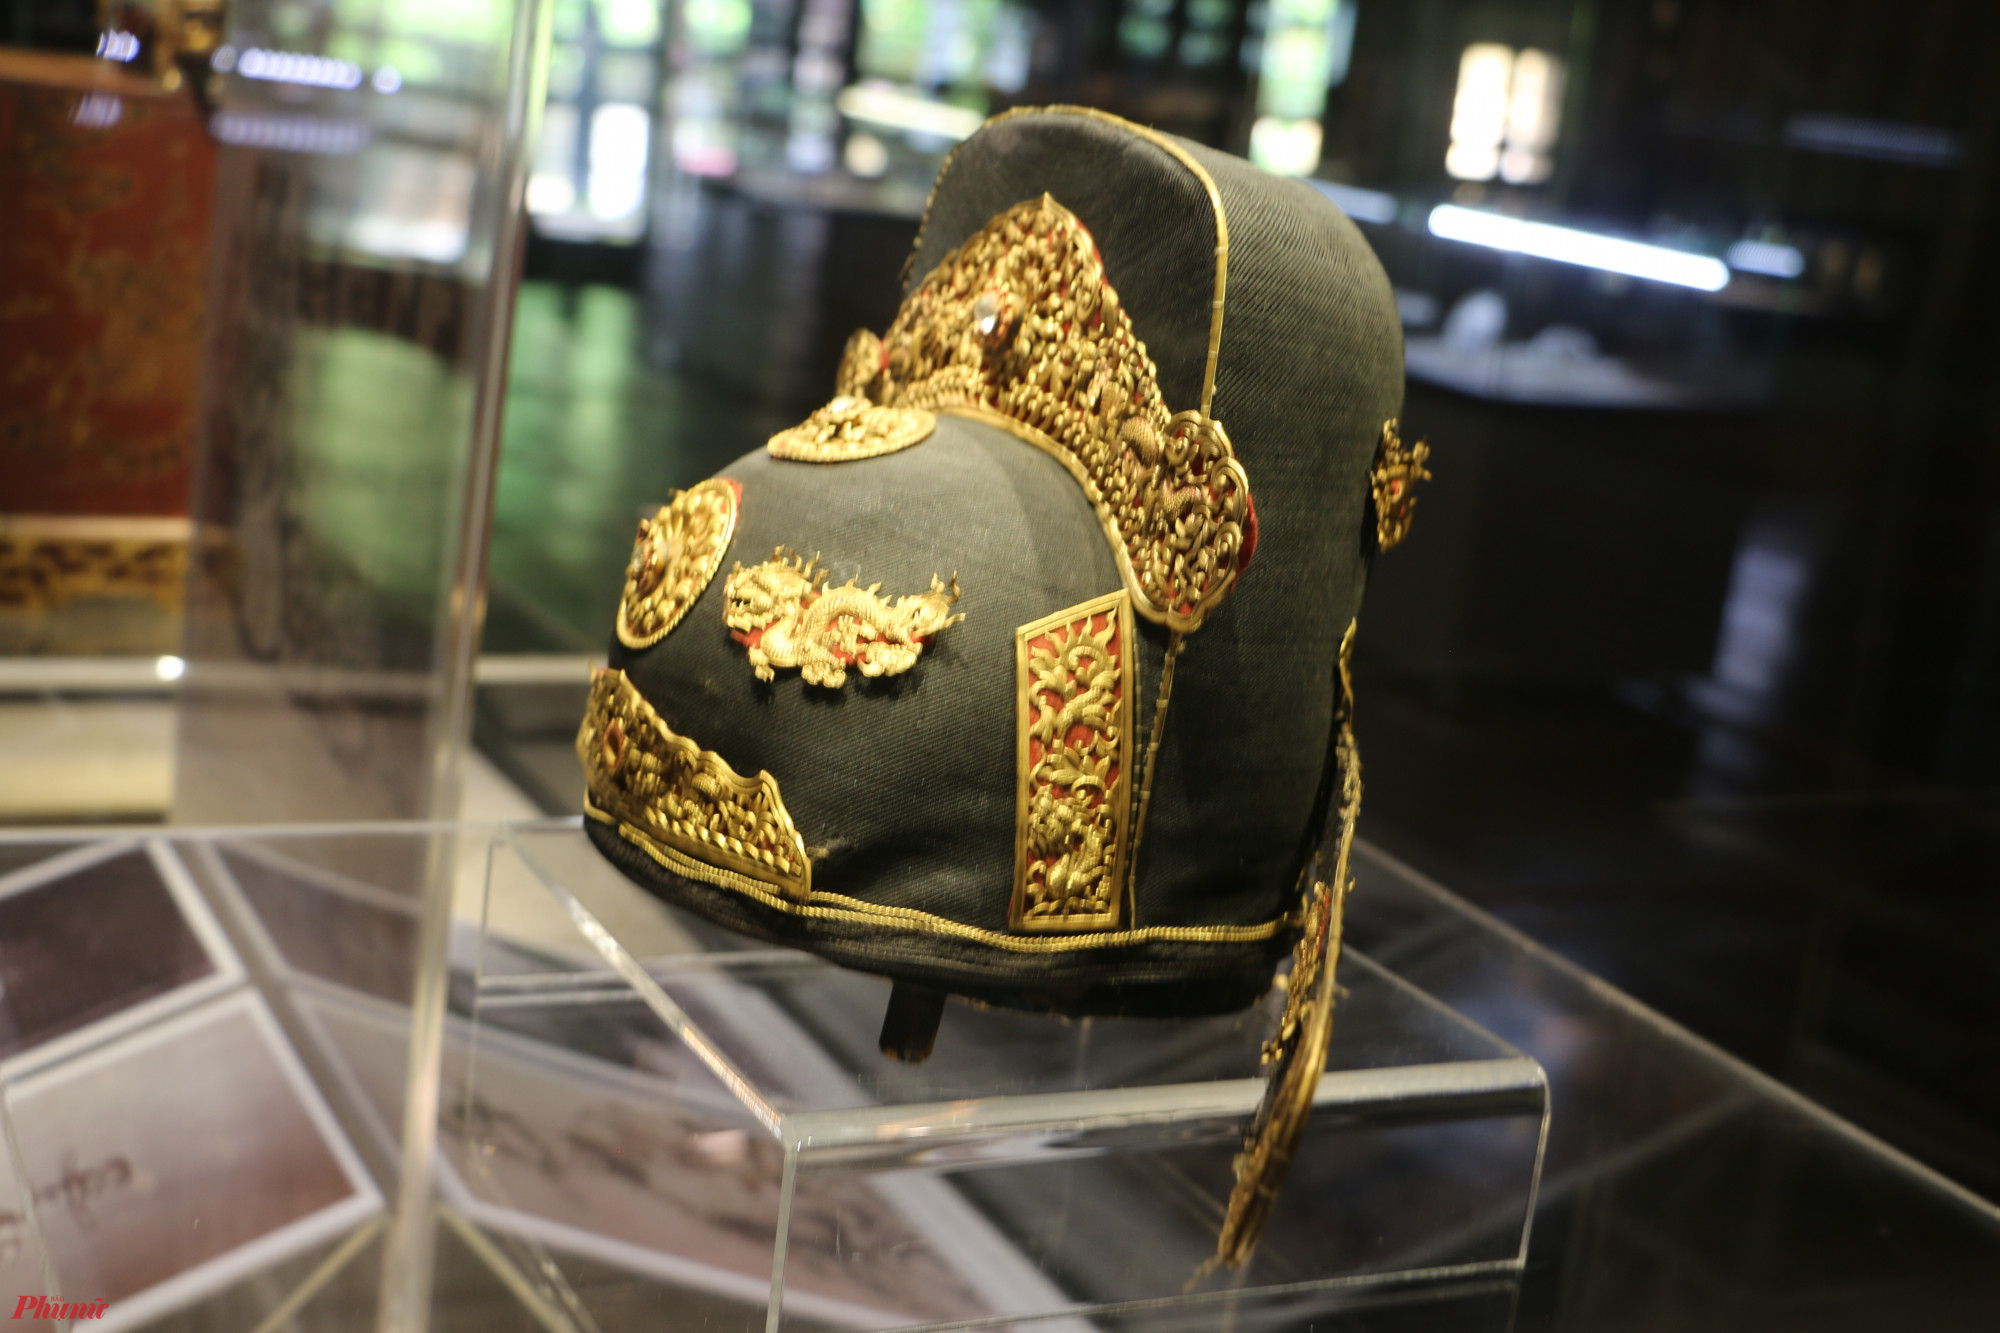 Theo ông Lộc, chiếc mũ này thuộc hàm quan trên nhất phẩm (hàng tứ trụ triều đình), là một cổ vật rất độc đáo và có niên đại vào khoảng đầu thế kỷ XX. Sau khi được trực tiếp ngắm, 'sờ', ông Lộc nhận xét toàn bộ phần trang sức đính trên mũ là vàng thật, khoảng tám tuổi rưỡi.